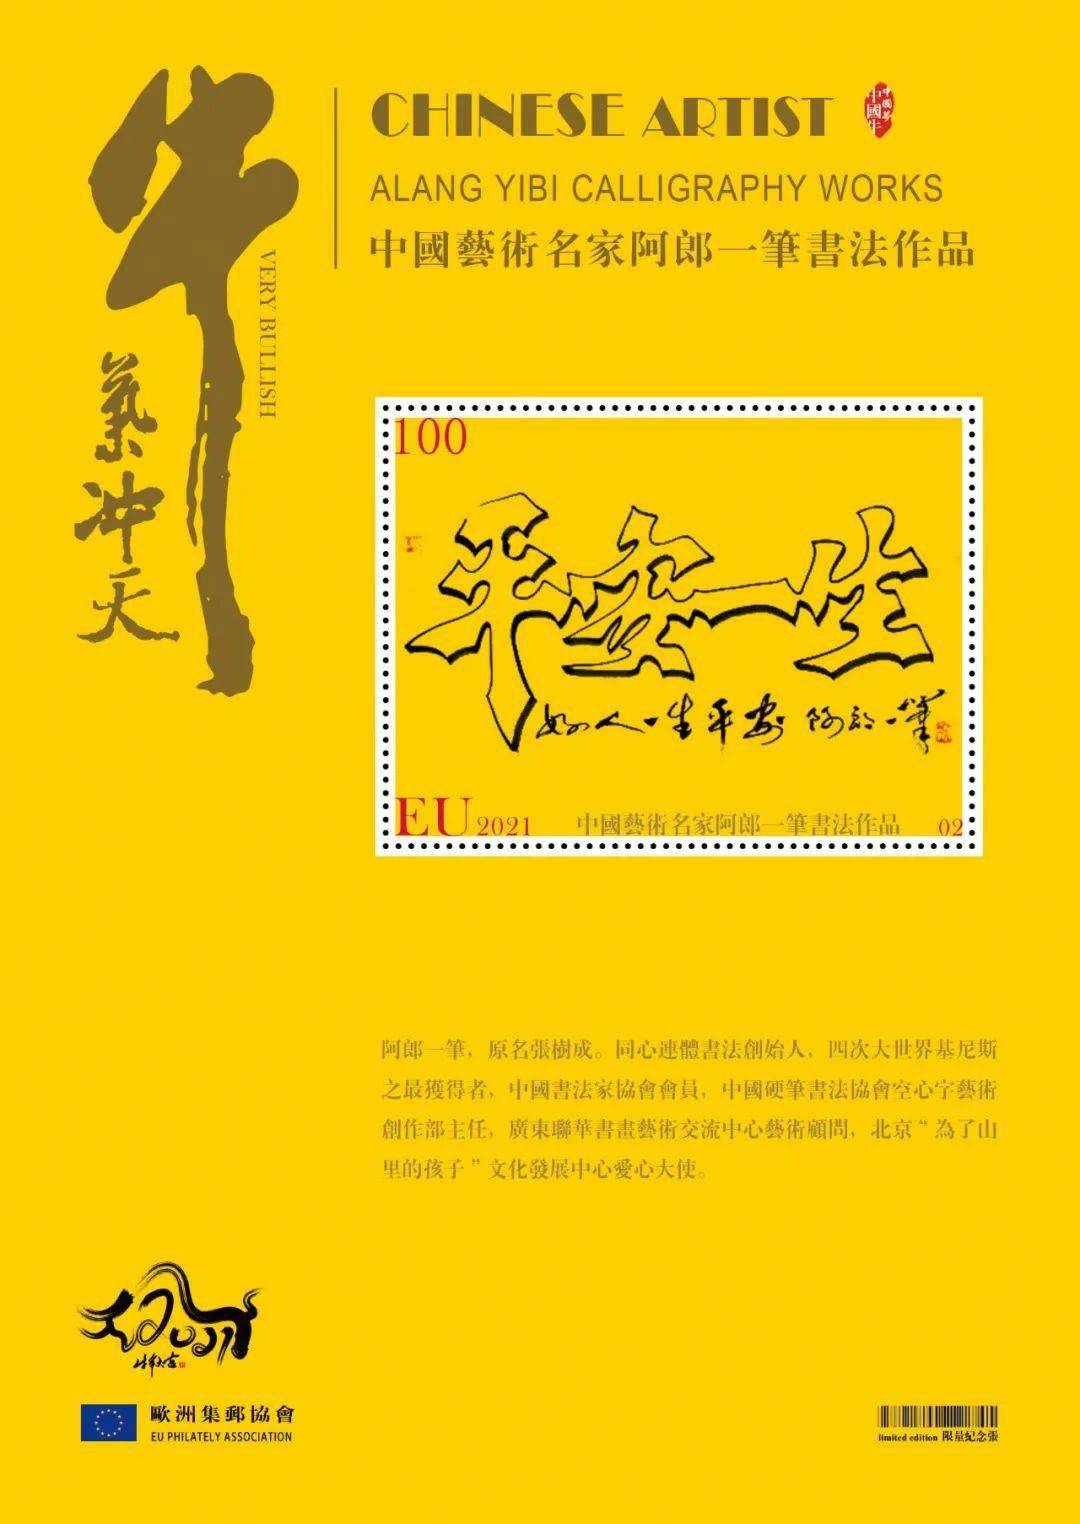 【中国梦 中国牛】阿郎一笔主题邮票与2021生肖牛邮票同时首发